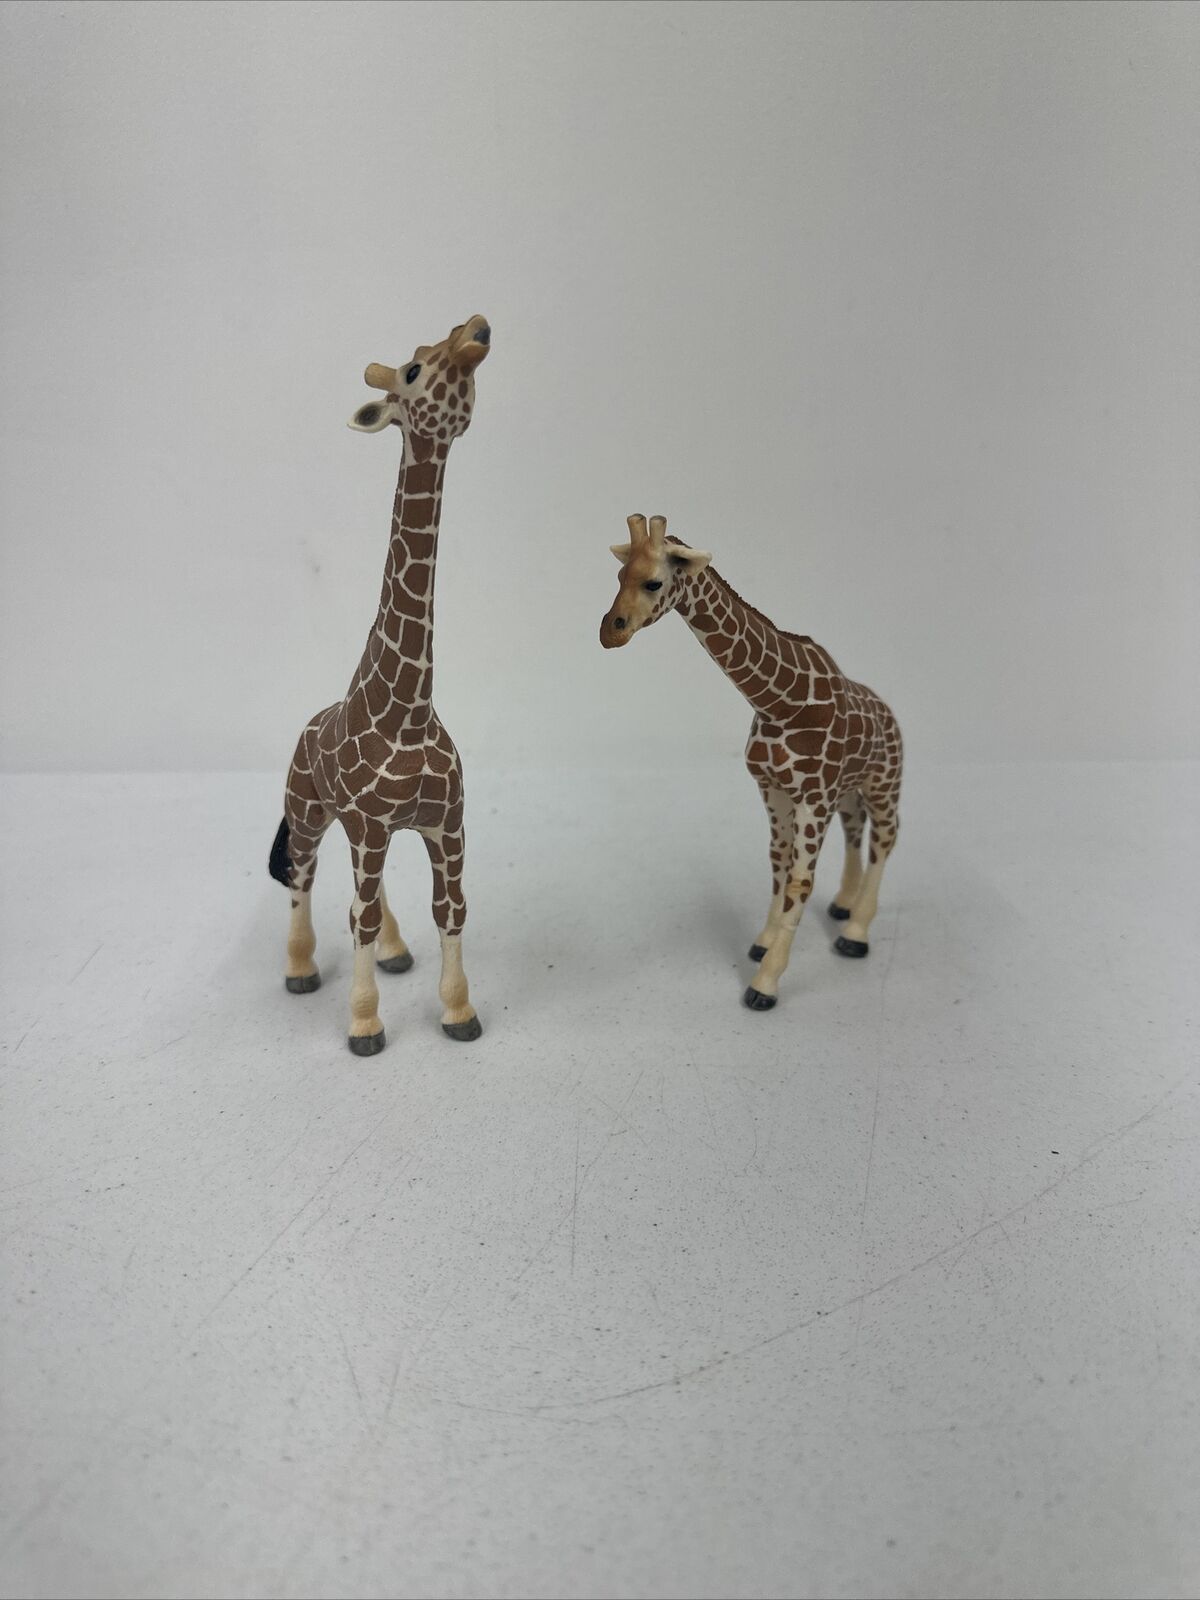 Schleich Giraffes Unmatched Pair, 2003 & 2008